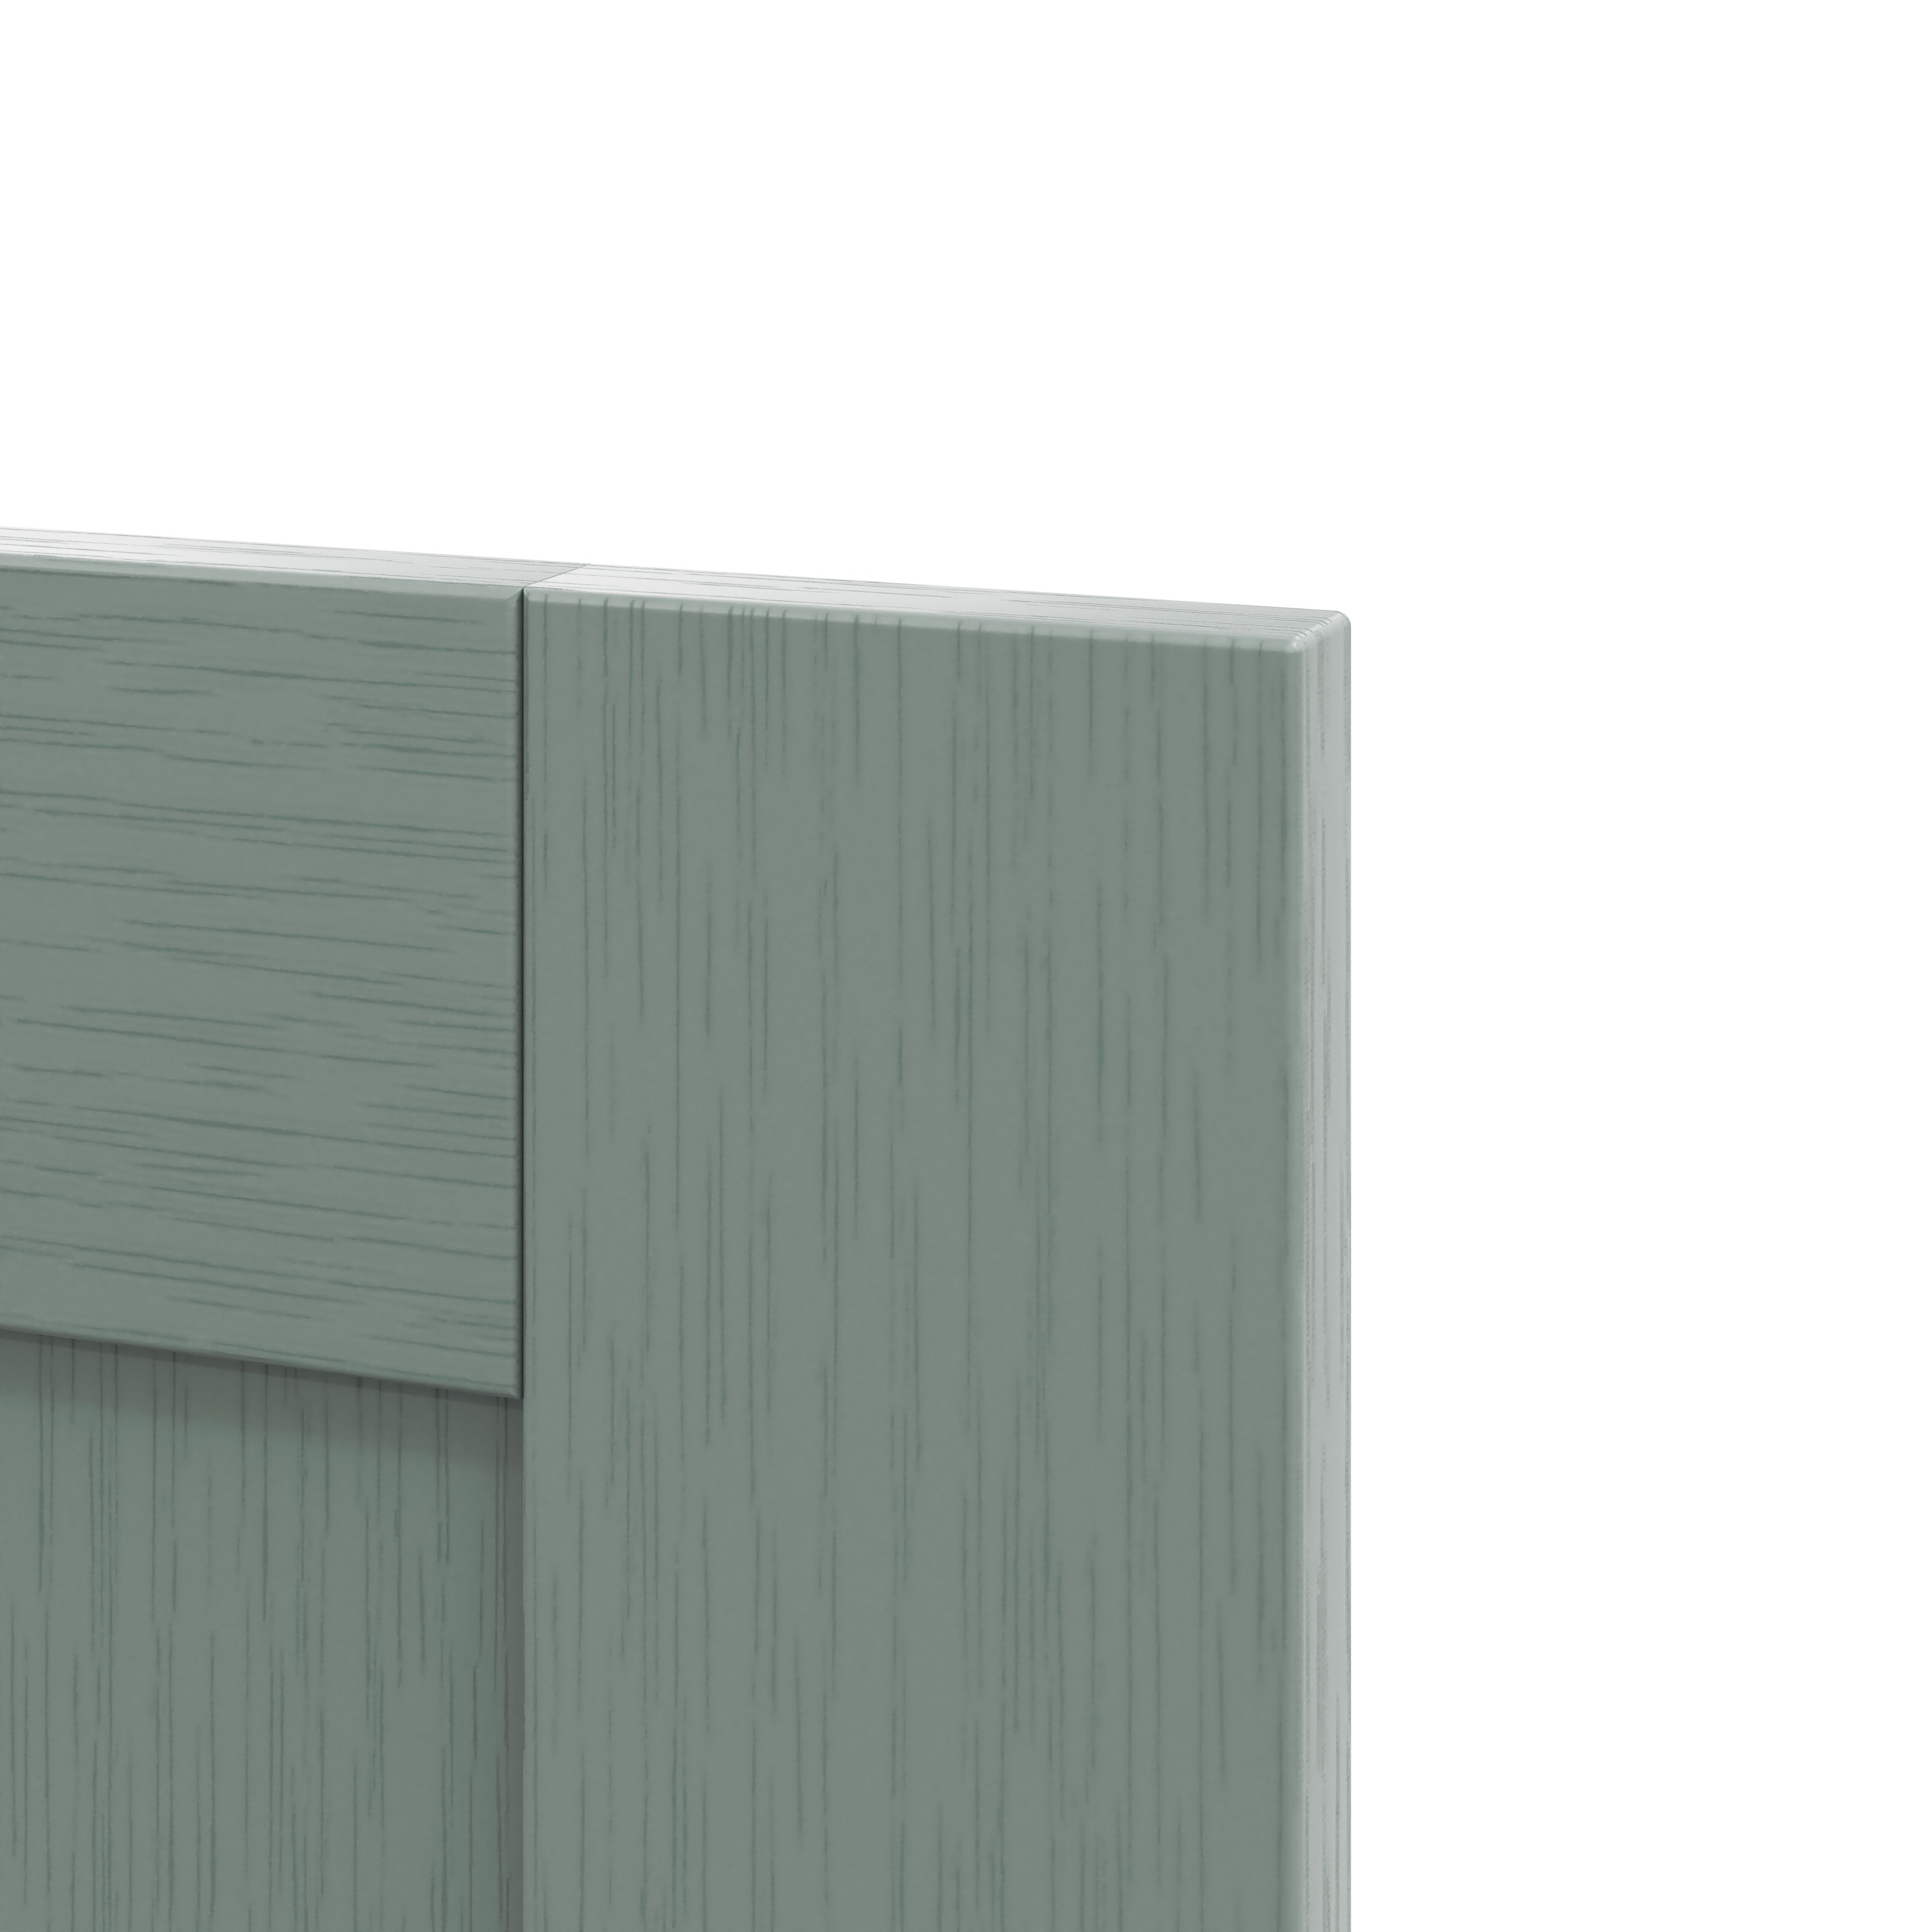 GoodHome Alpinia Matt Green Painted Wood Effect Shaker Drawer front, bridging door & bi fold door, (W)400mm (H)356mm (T)18mm